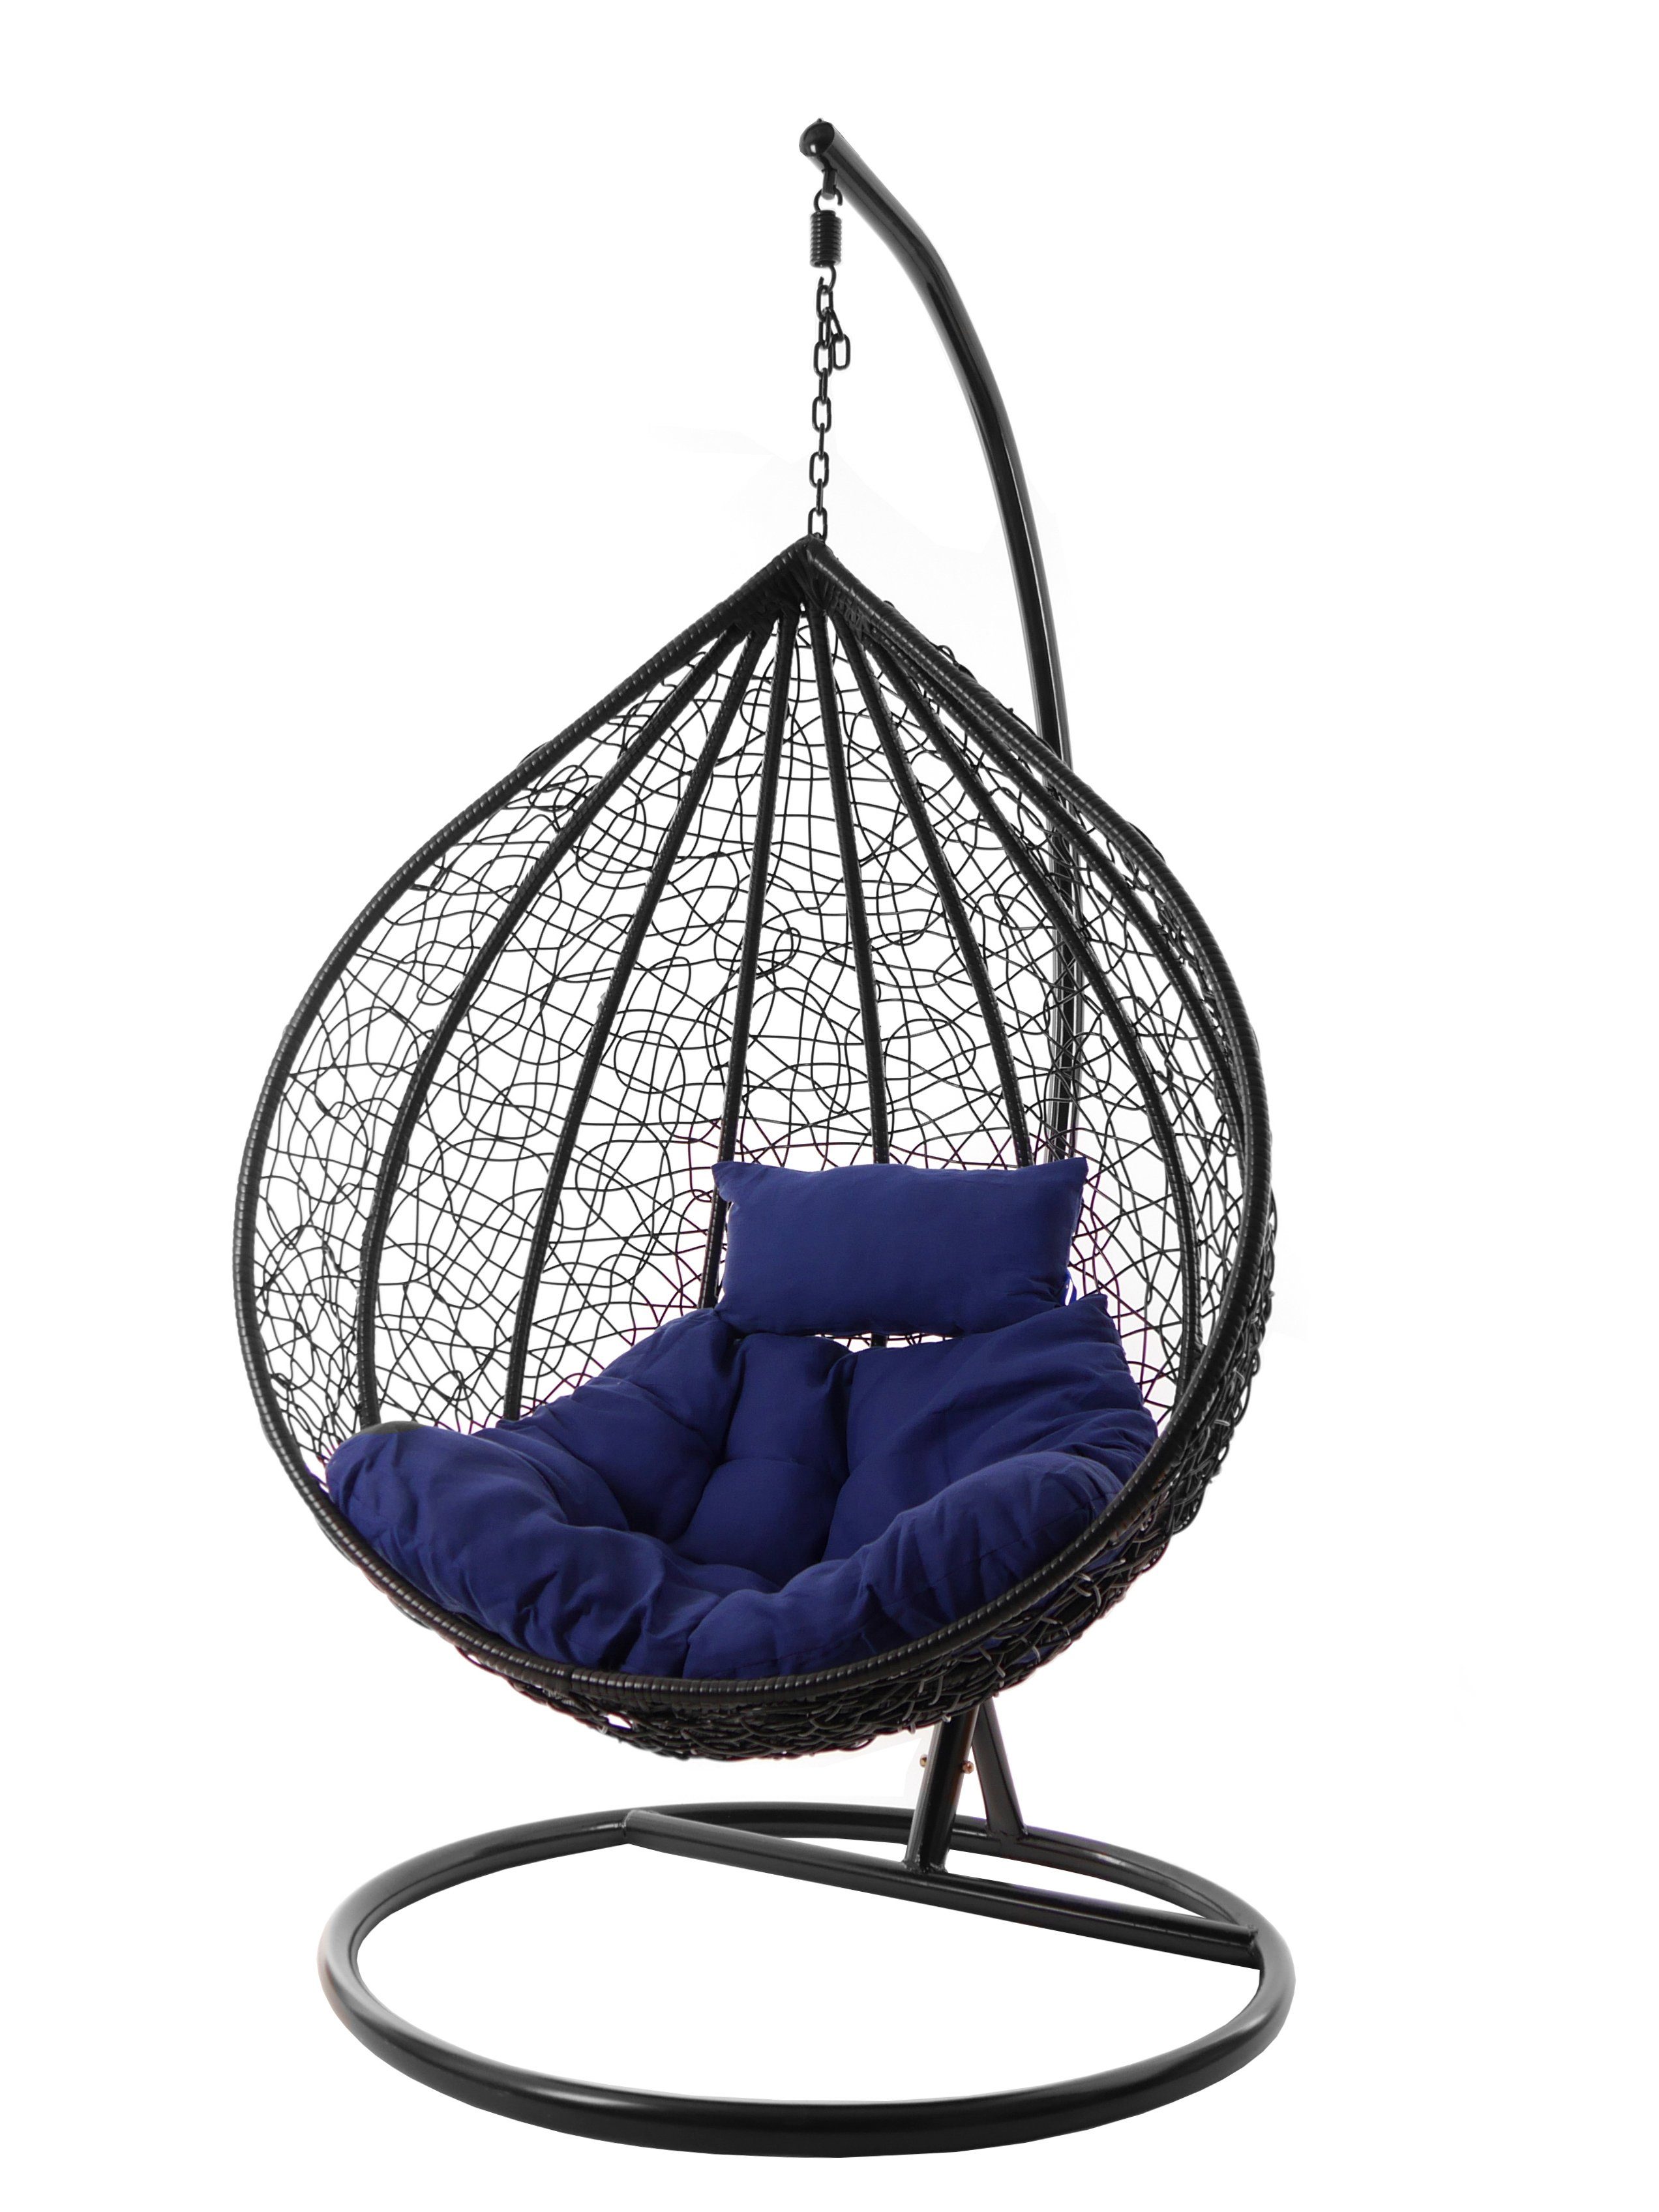 KIDEO Hängesessel Hängesessel MANACOR schwarz, edles schwarz, moderner Swing Chair, Schwebesessel inklusive Gestell und Kissen dunkelblau (5900 navy)